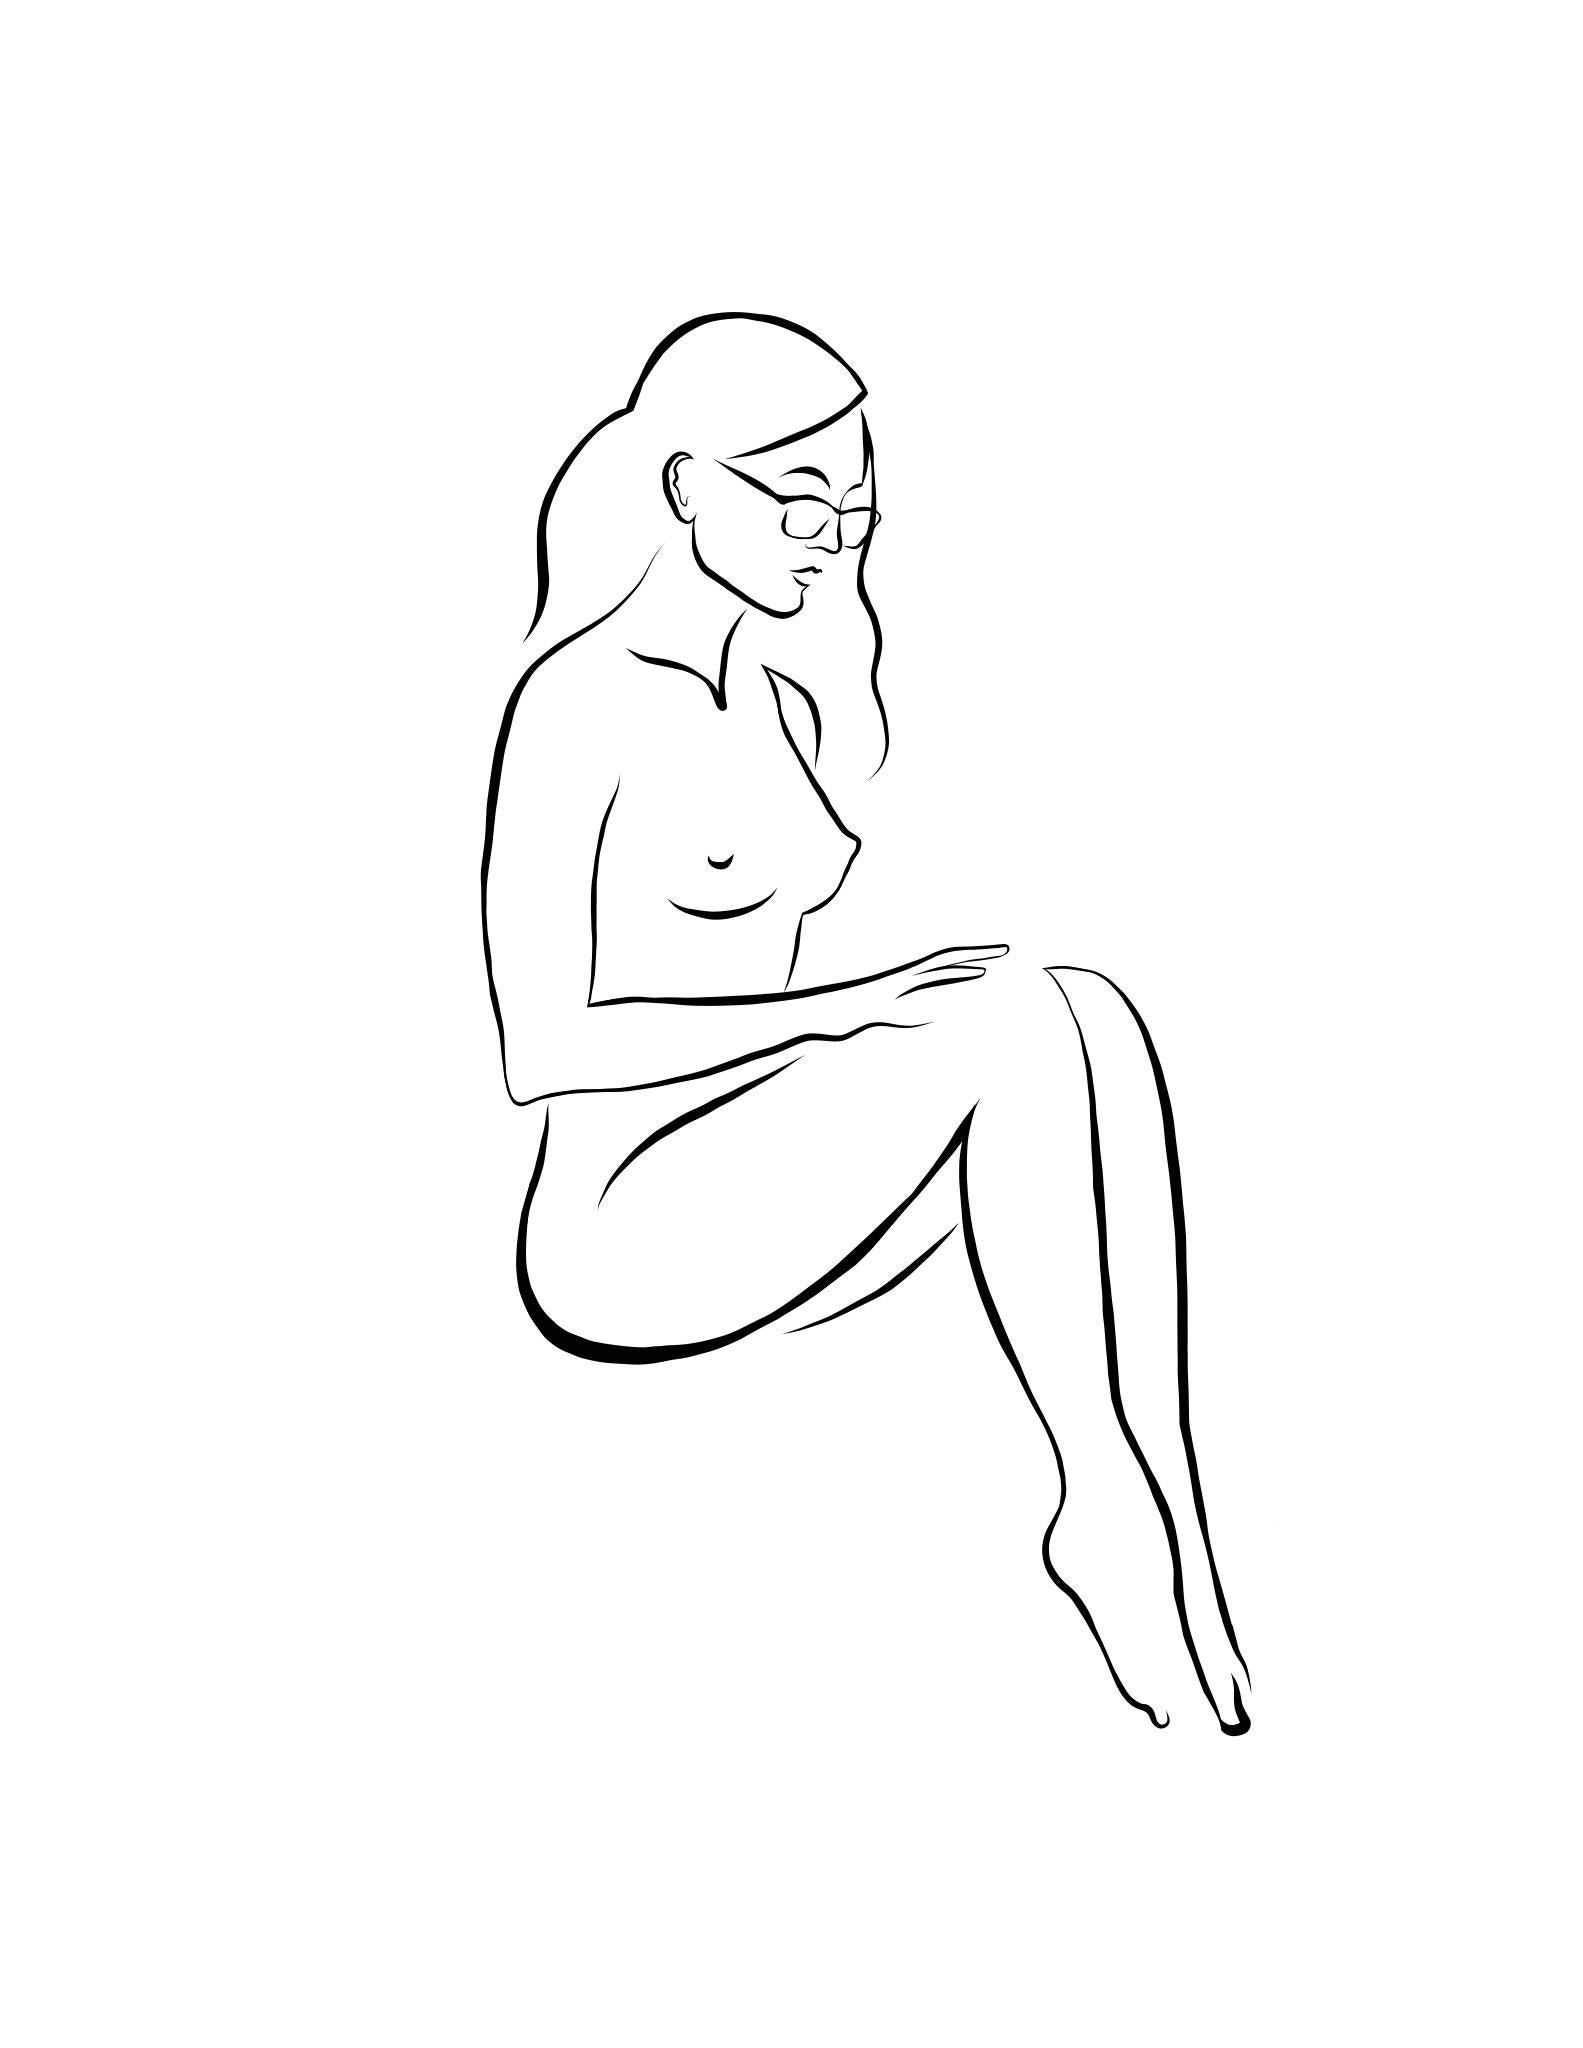 Haiku #52, 1/50 - Digitale Vector-Zeichnung, sitzende weibliche nackte weibliche Akt-Frauenfigur, Gläser, Figur